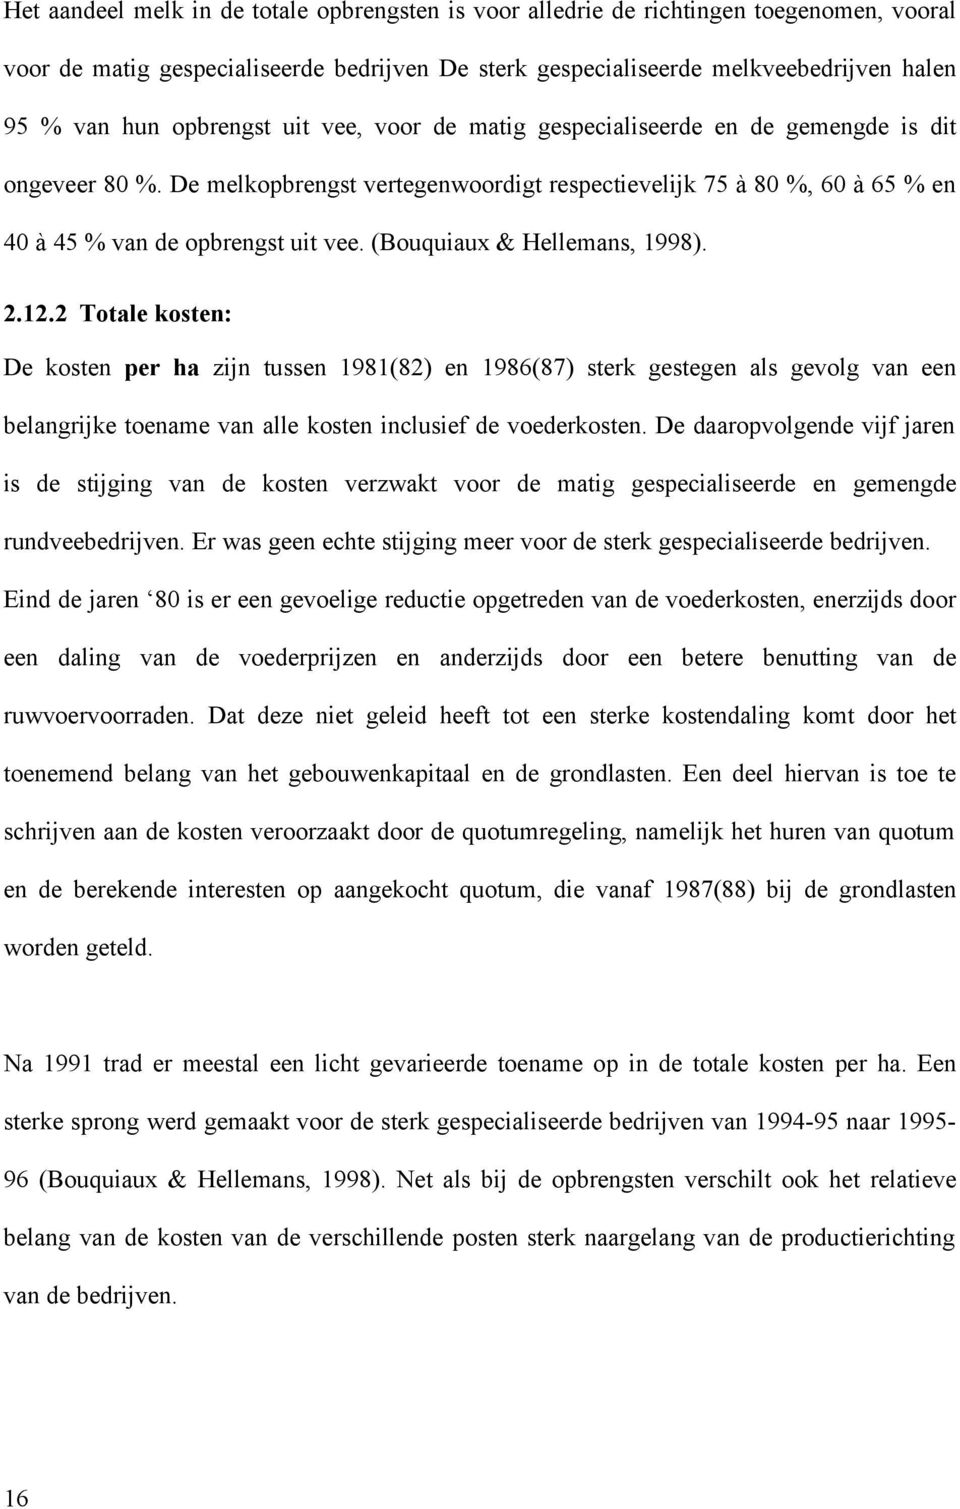 (Bouquiaux & Hellemans, 1998). 2.12.2 Totale kosten: De kosten per ha zijn tussen 1981(82) en 1986(87) sterk gestegen als gevolg van een belangrijke toename van alle kosten inclusief de voederkosten.